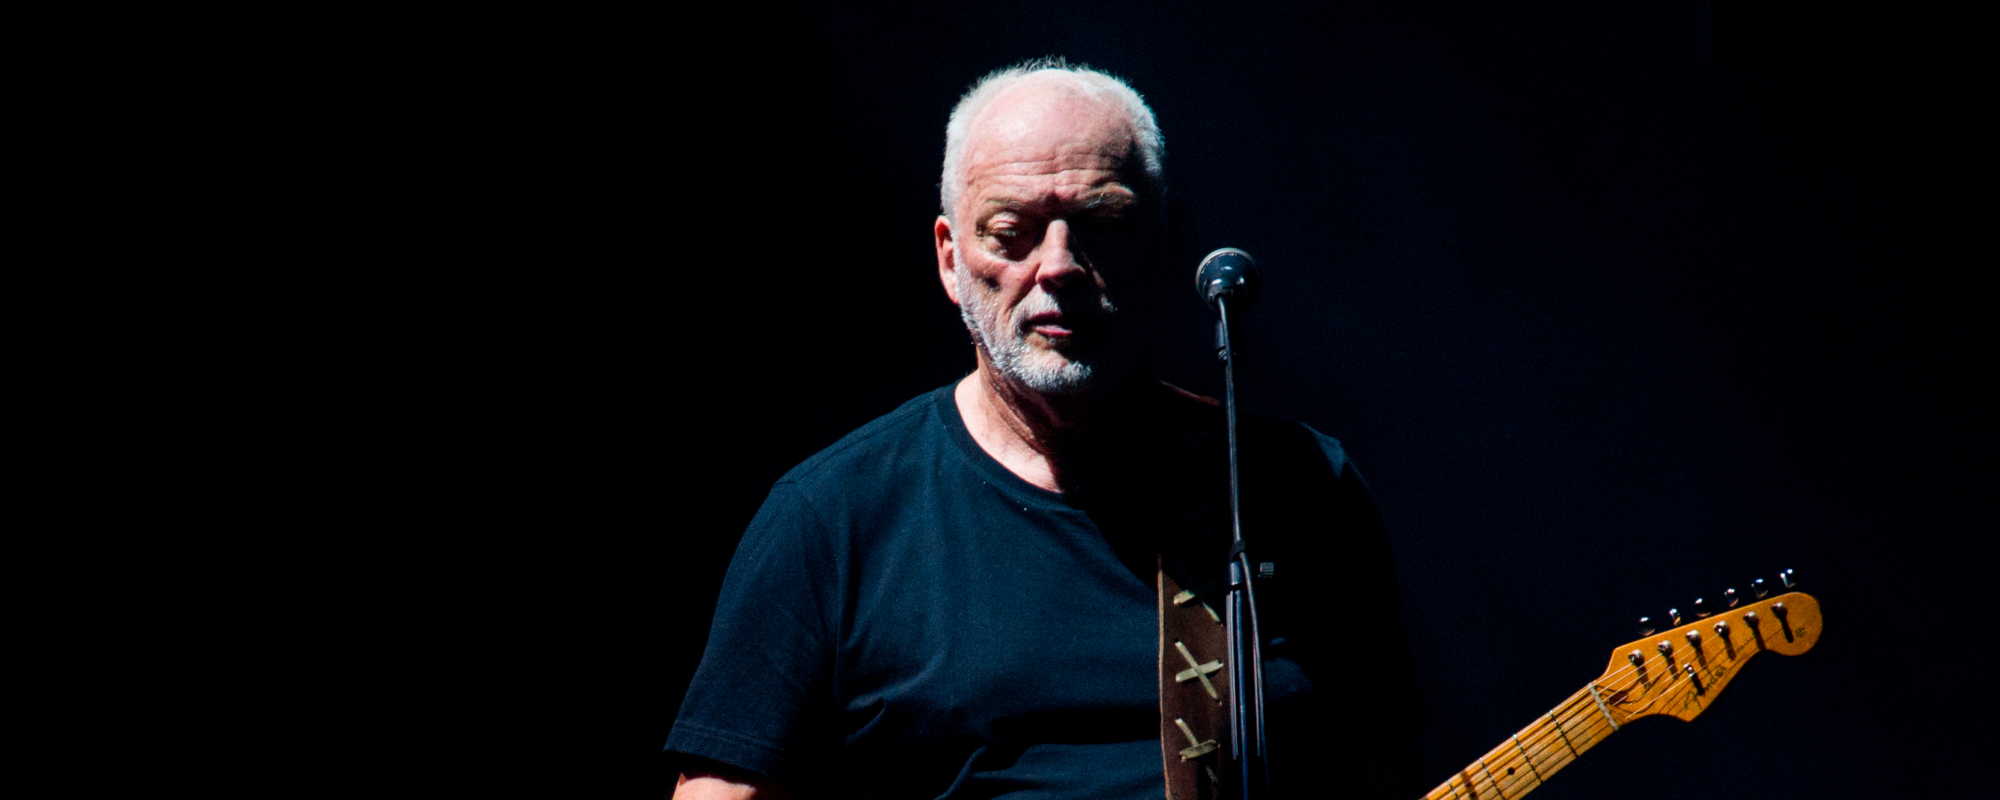 L'album de réédition de David Gilmour de The Orb et Pink Floyd